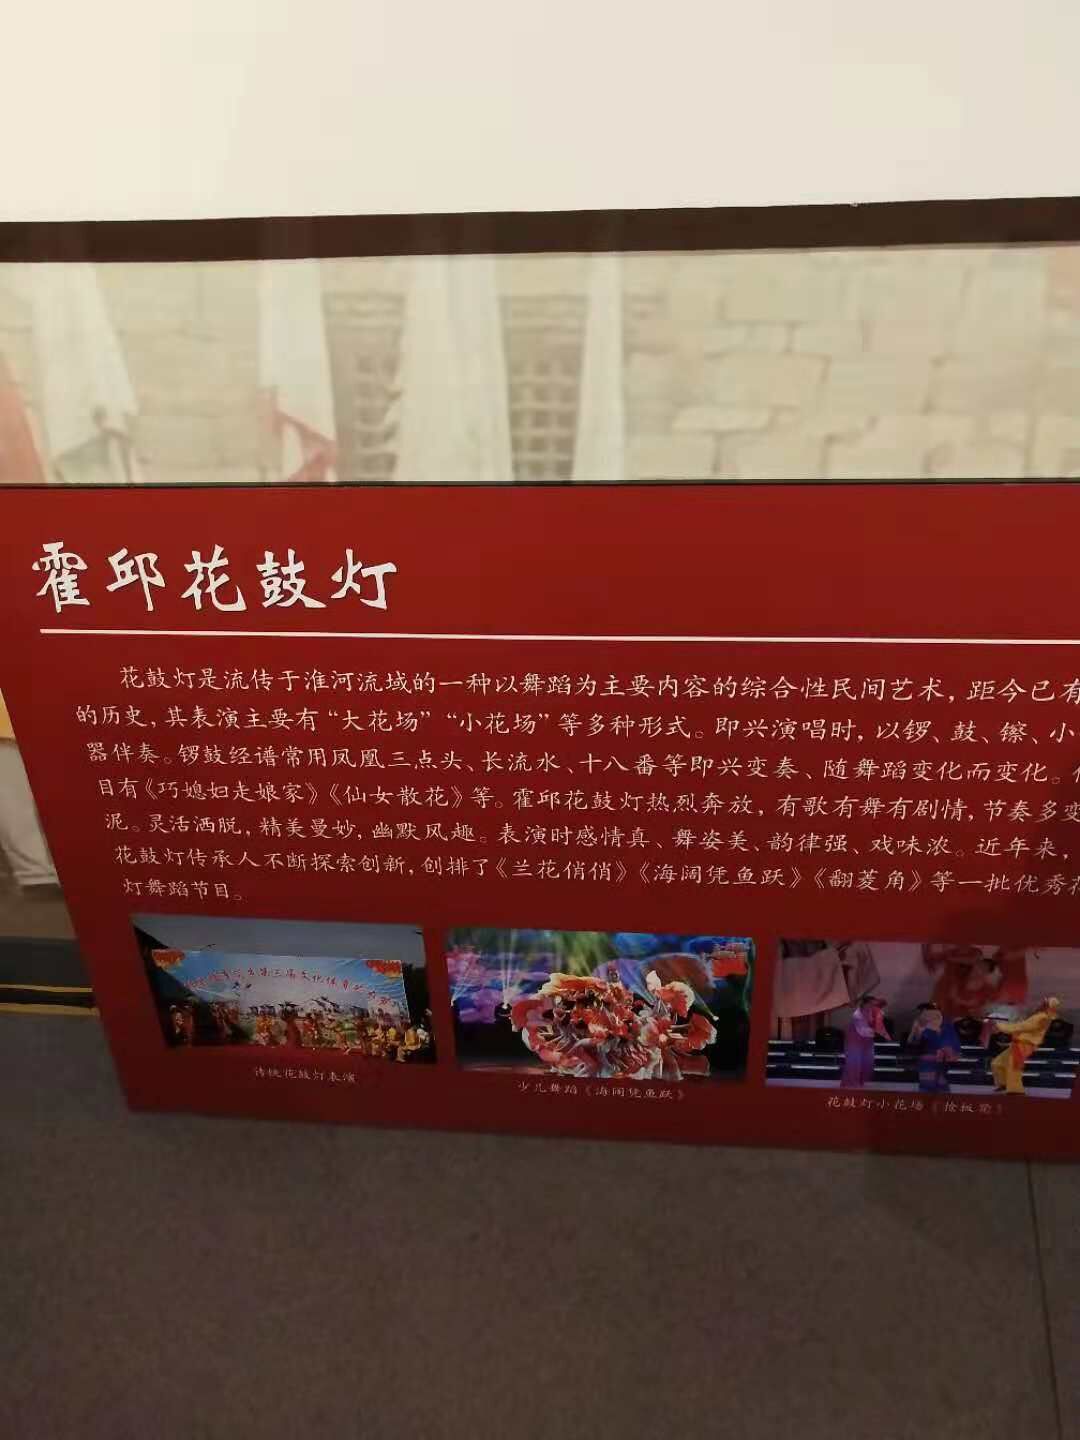 上海晓东展馆展板拉米娜制作中心_拉米娜版画制作公司